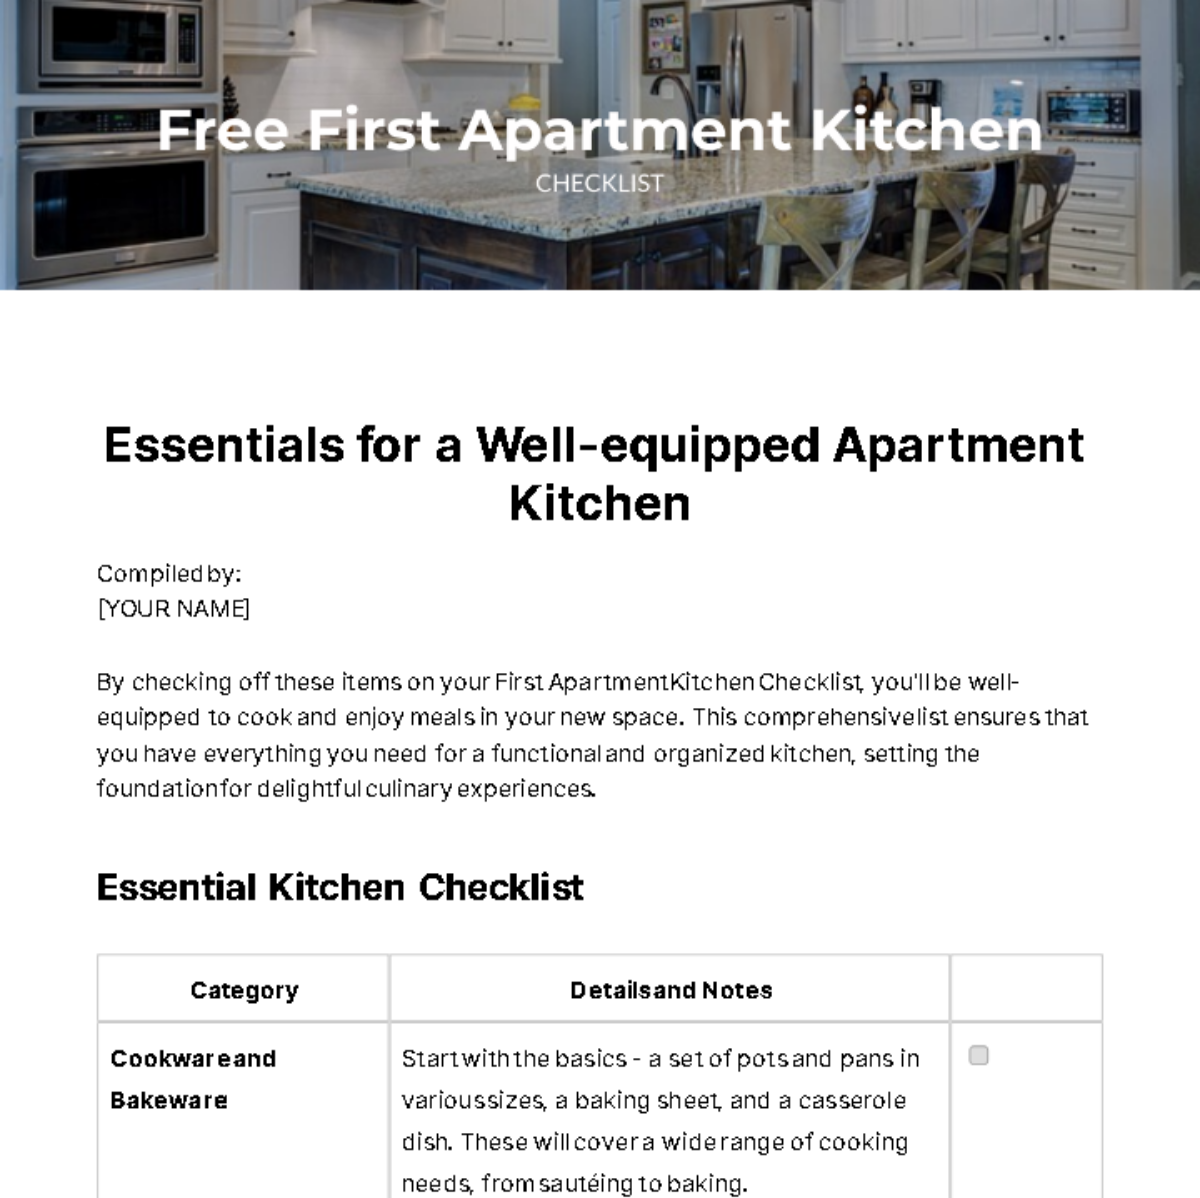 Free First Apartment Kitchen Checklist Template